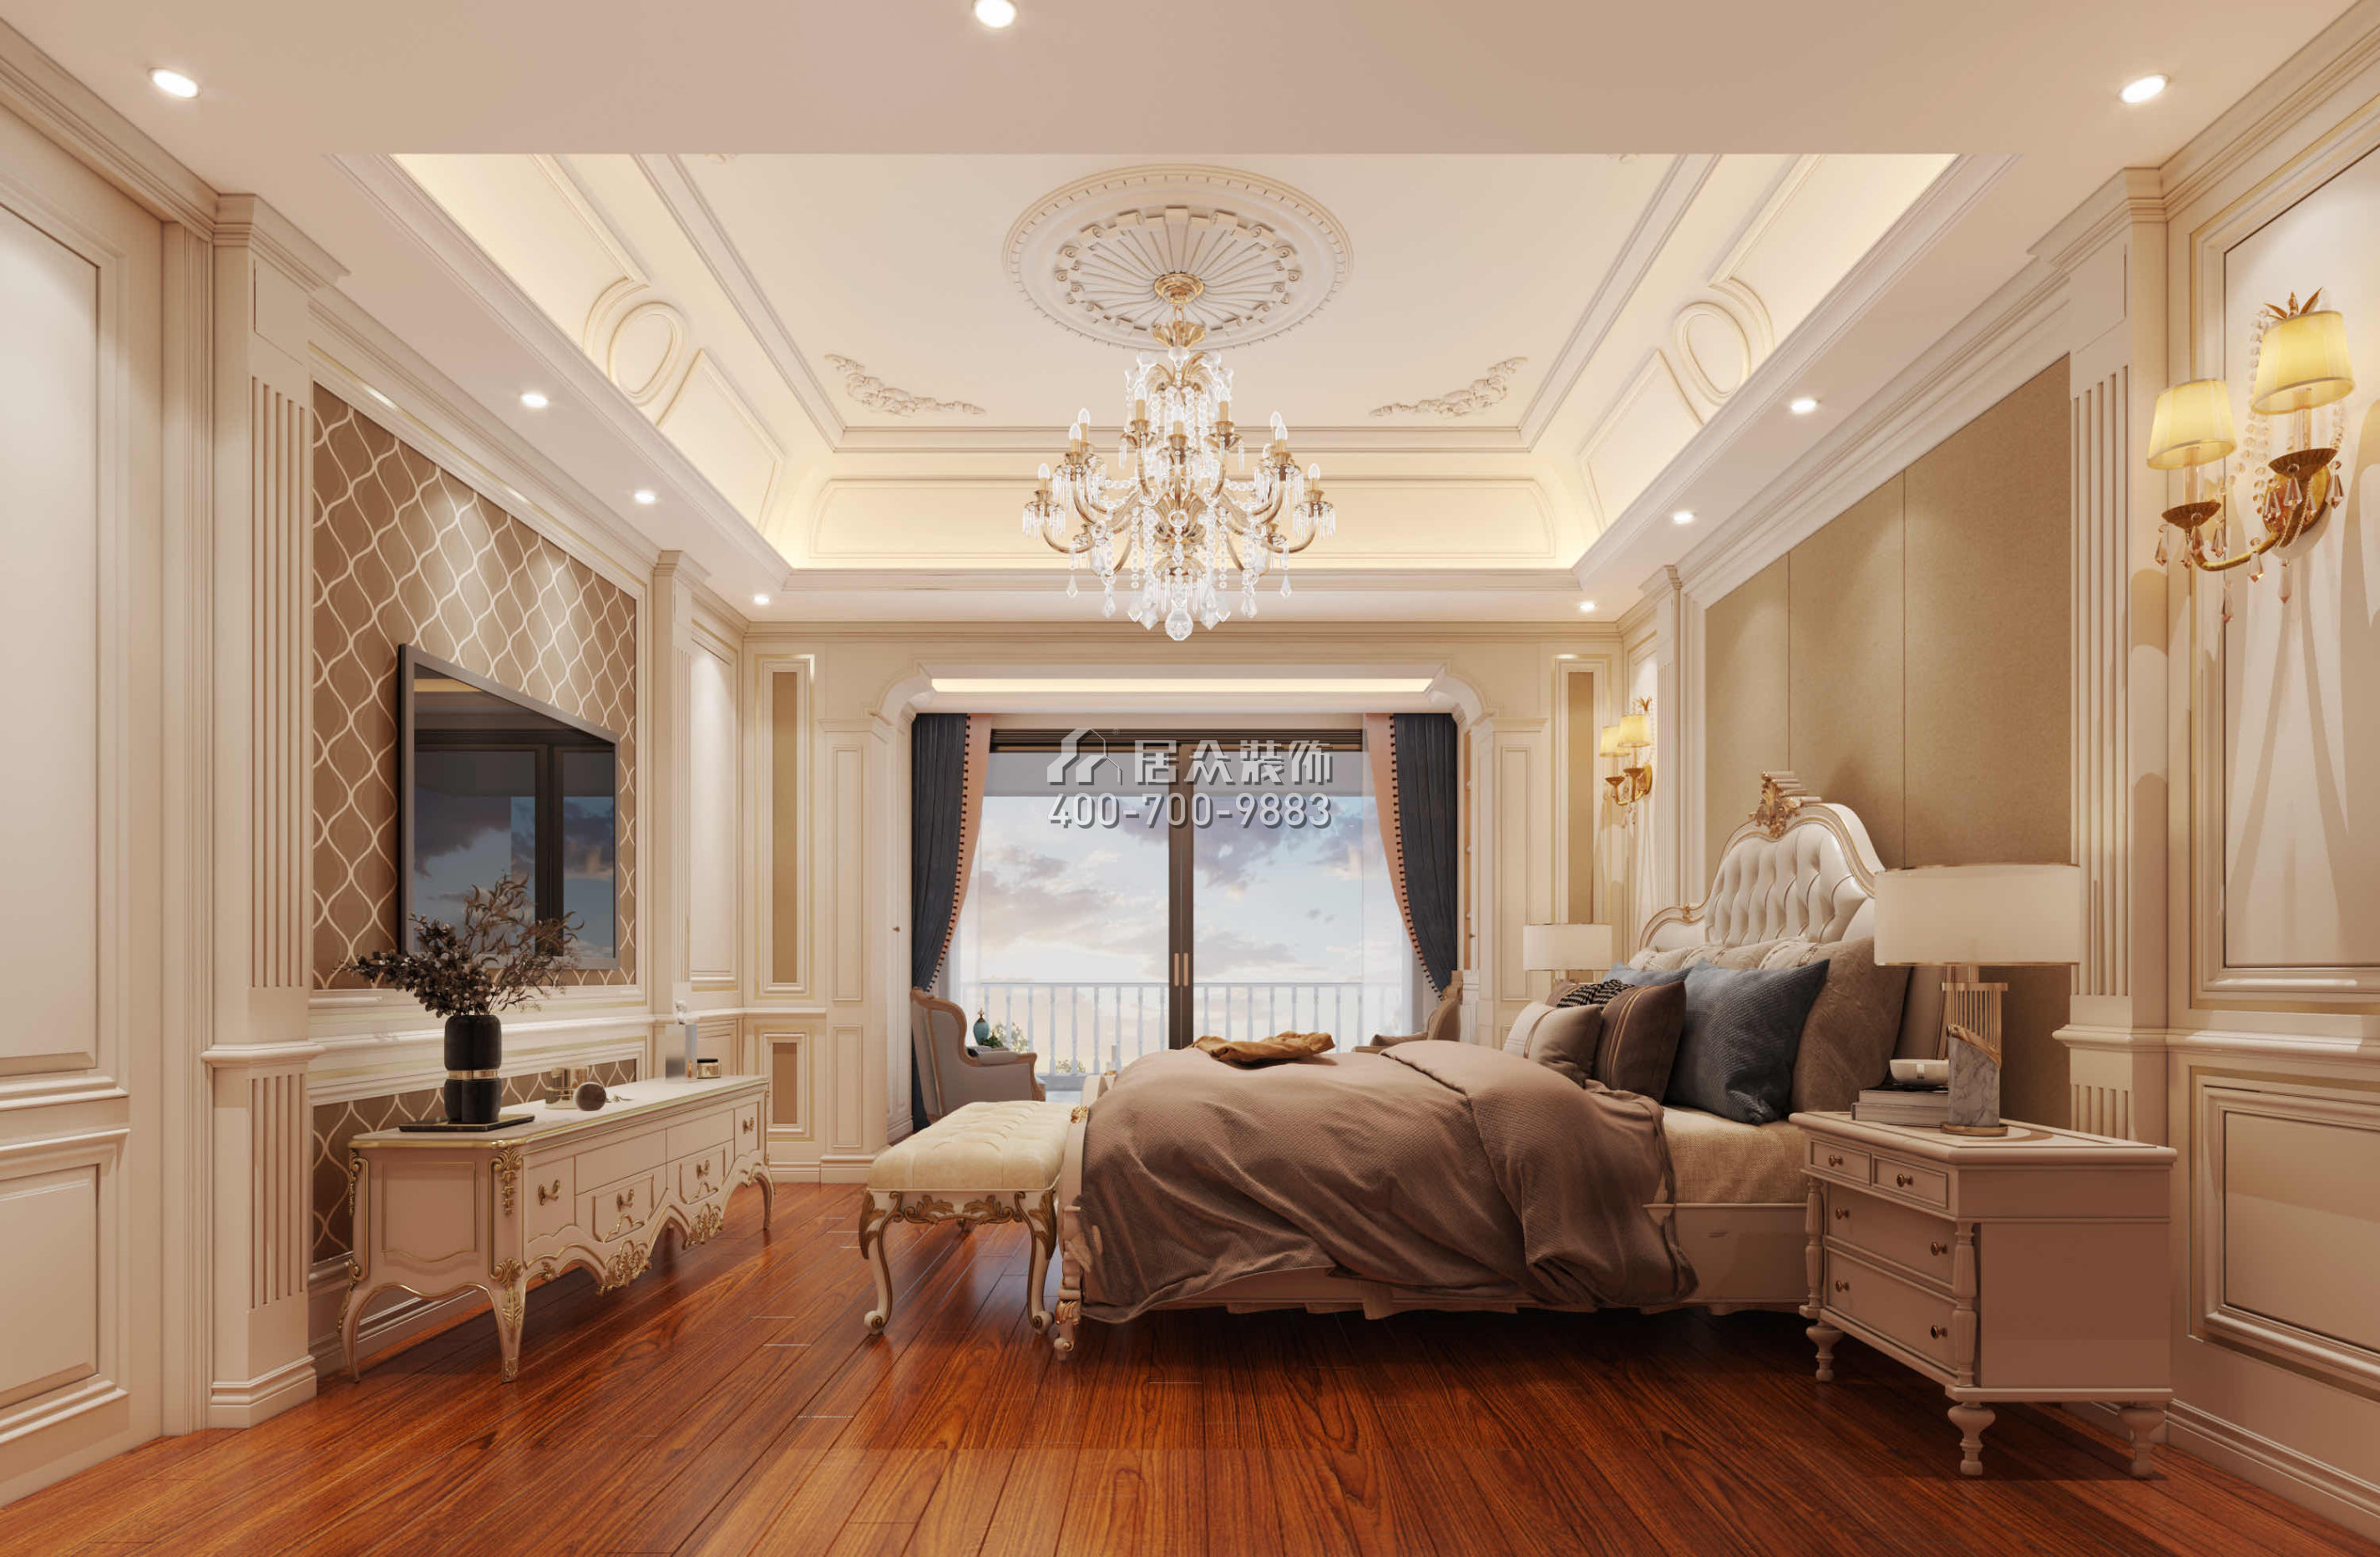 仁山智水780平方米歐式風格別墅戶型臥室裝修效果圖